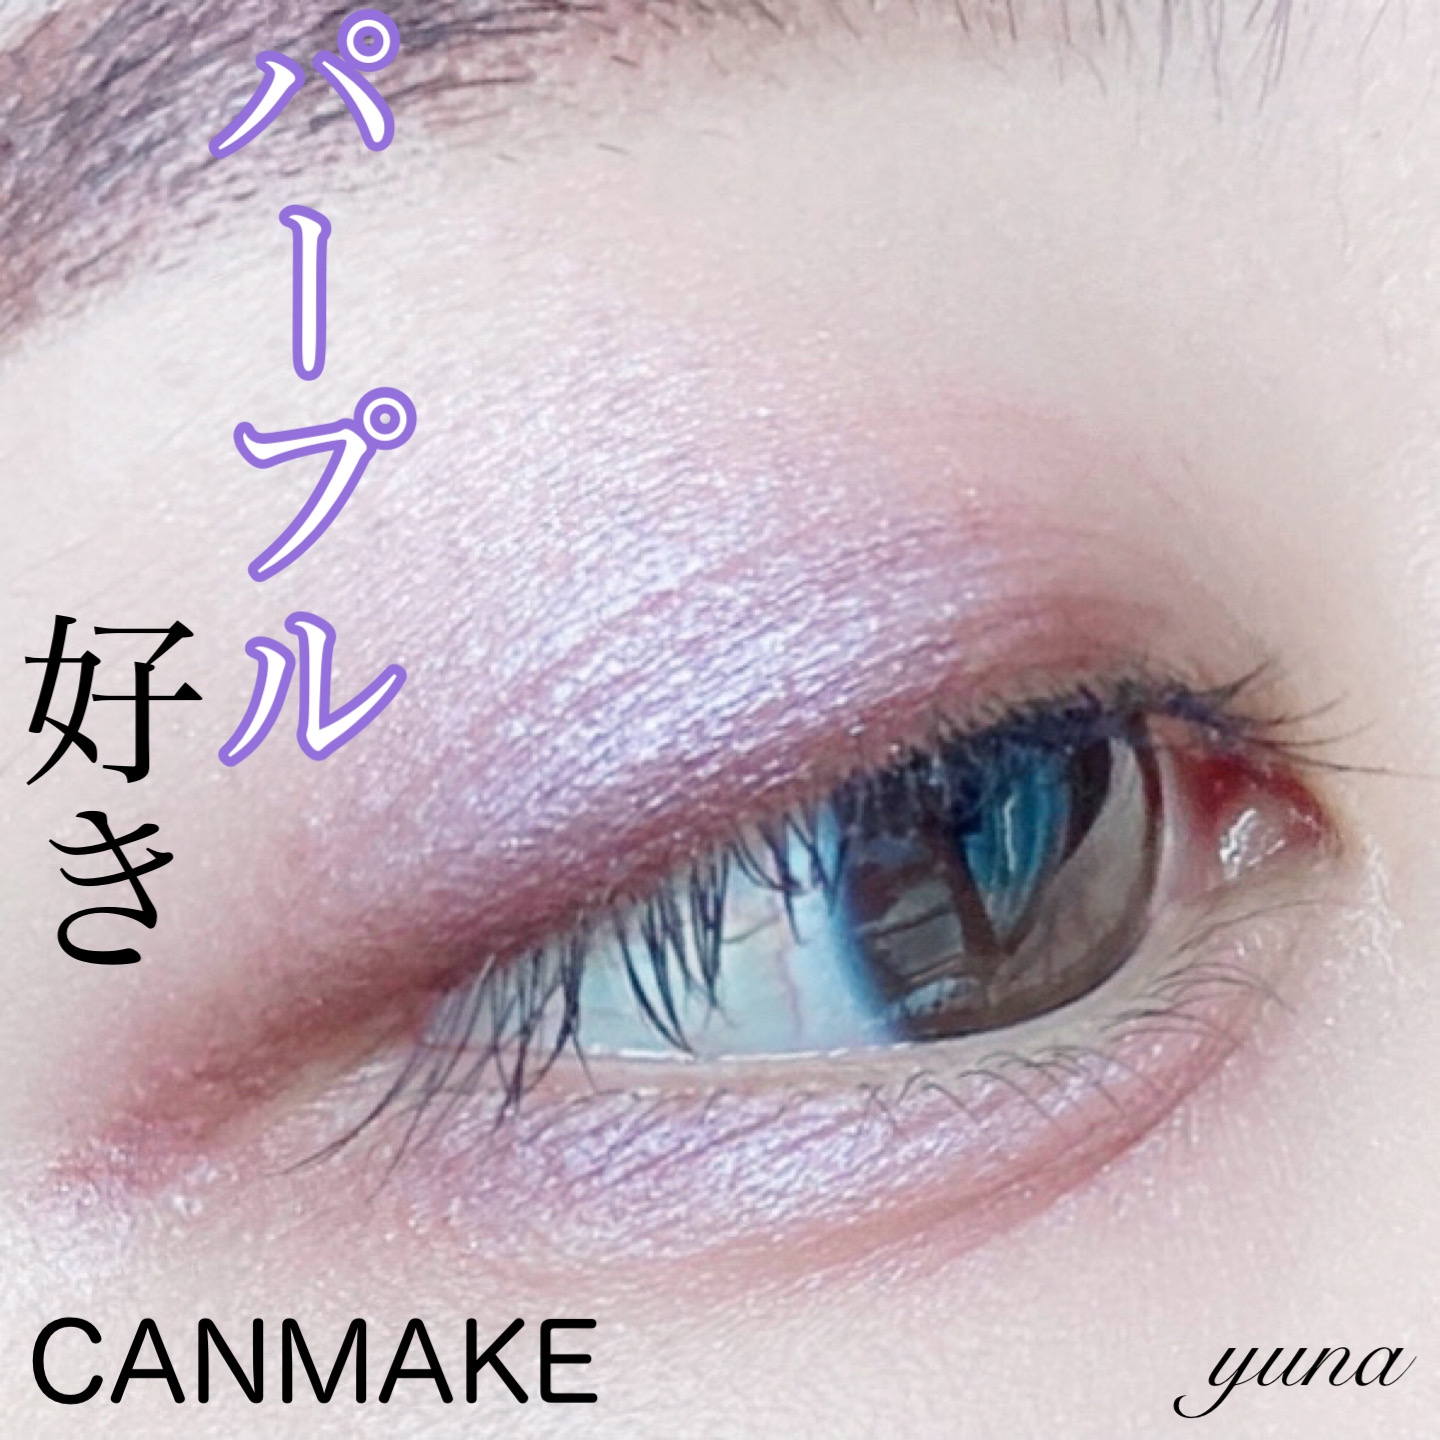 CANMAKE(キャンメイク) ジューシーピュアアイズを使ったyunaさんのクチコミ画像1